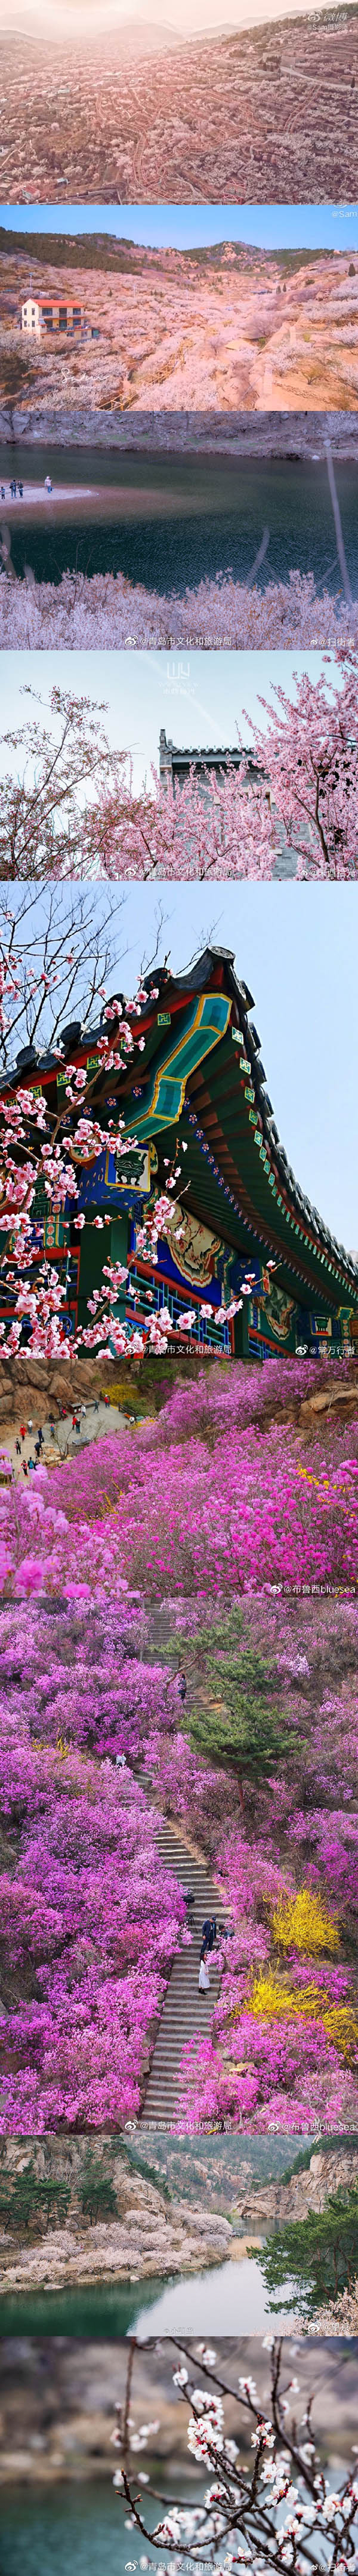 春到来！中国各地の文化・観光局が咲き乱れる花の画像を一斉にアップ